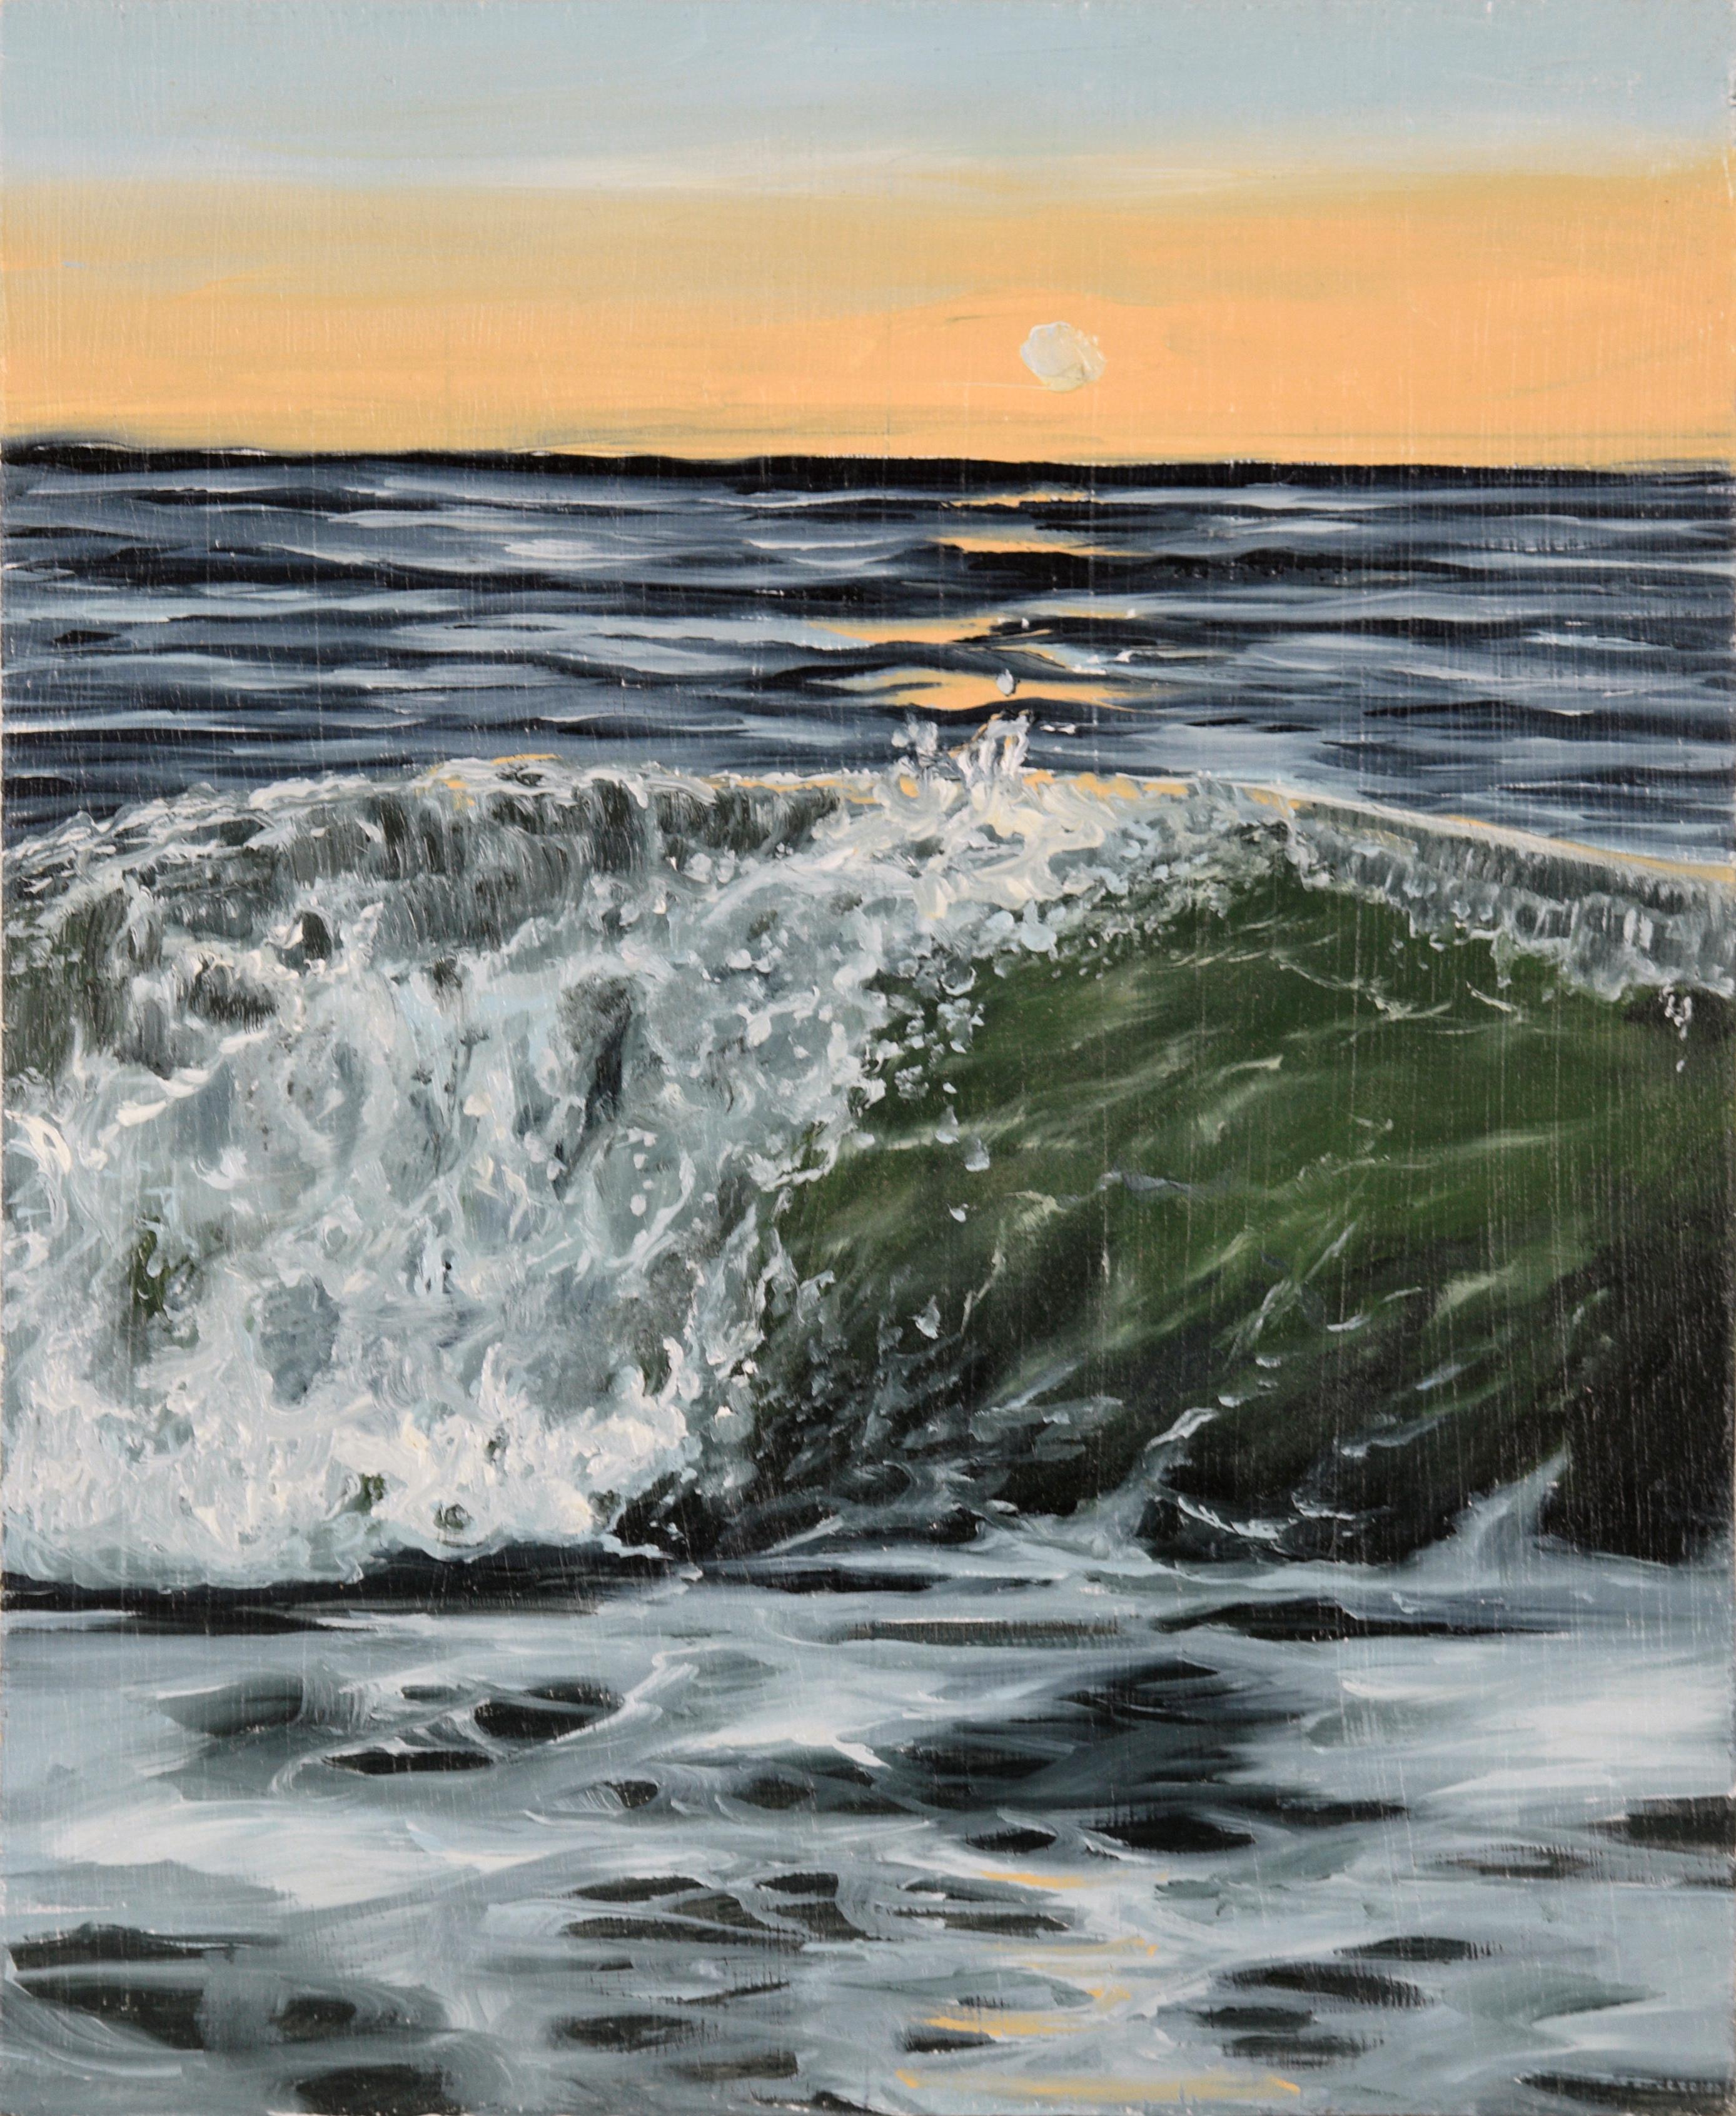 Landscape Painting Sophie Adair - "Anastasia" - Paysage marin de coucher de soleil avec vague tombante